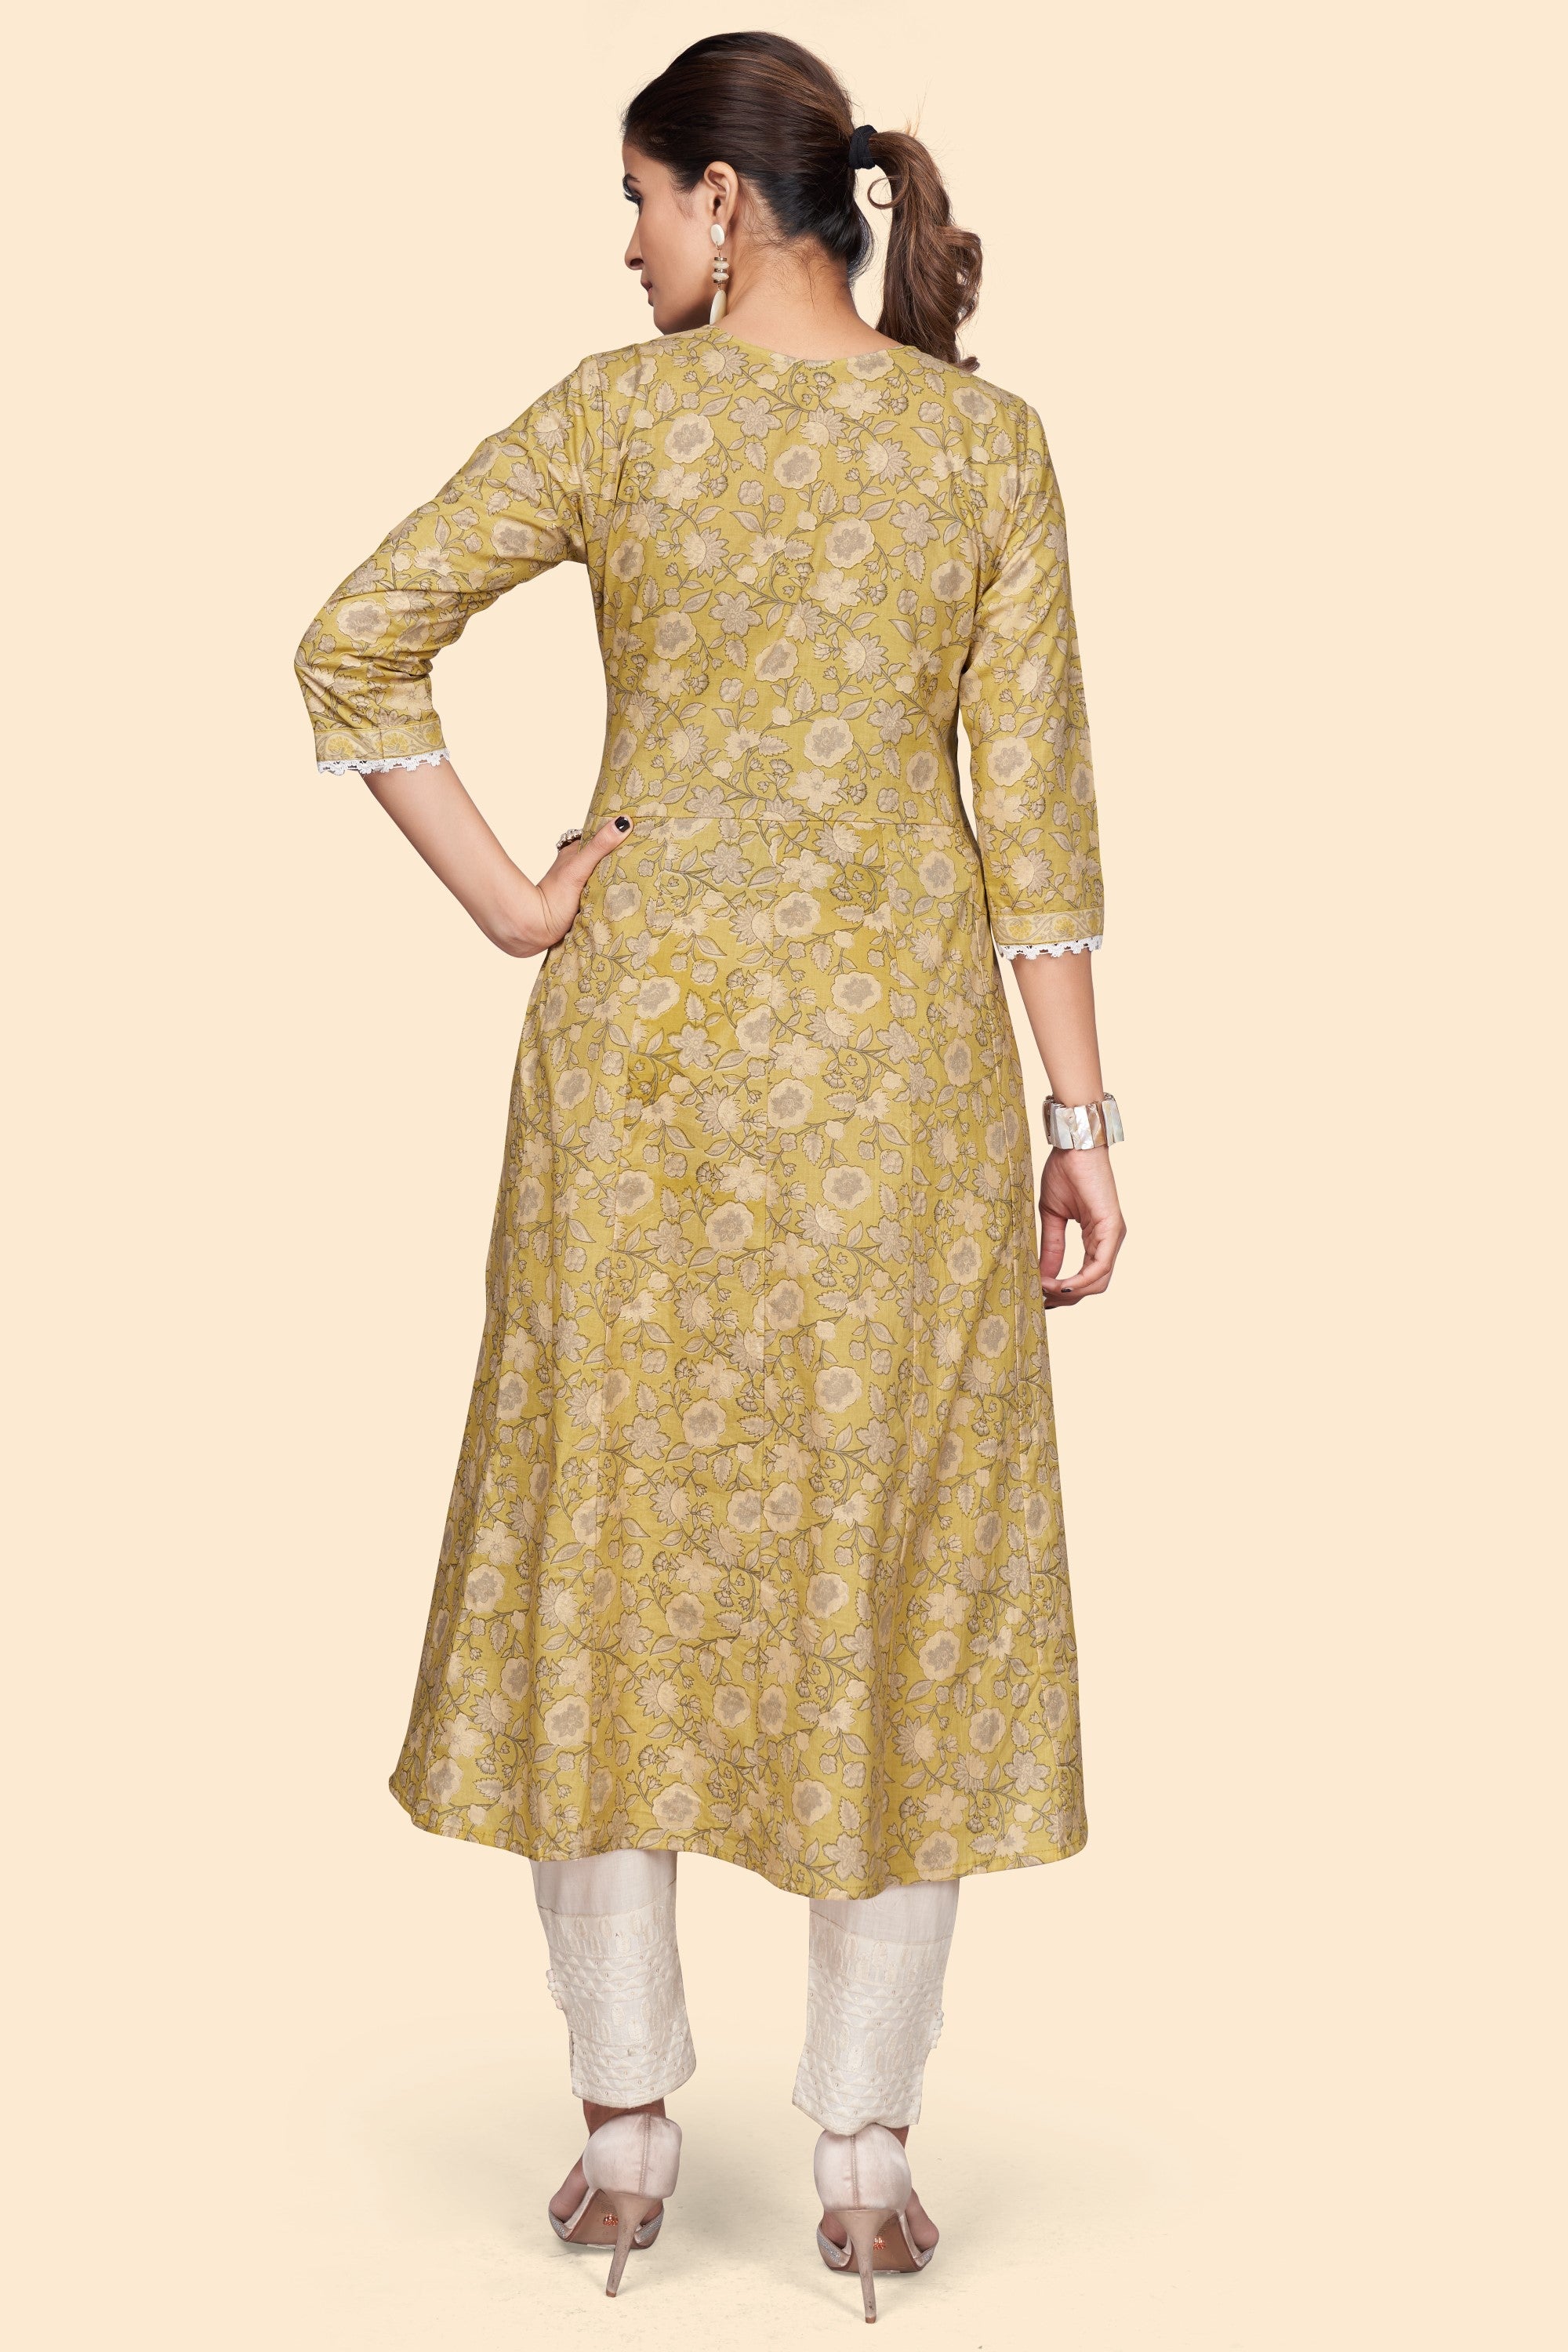 Women's Print & Embroidered A-Line Cotton Yellow Stitched Kurta - Vbuyz